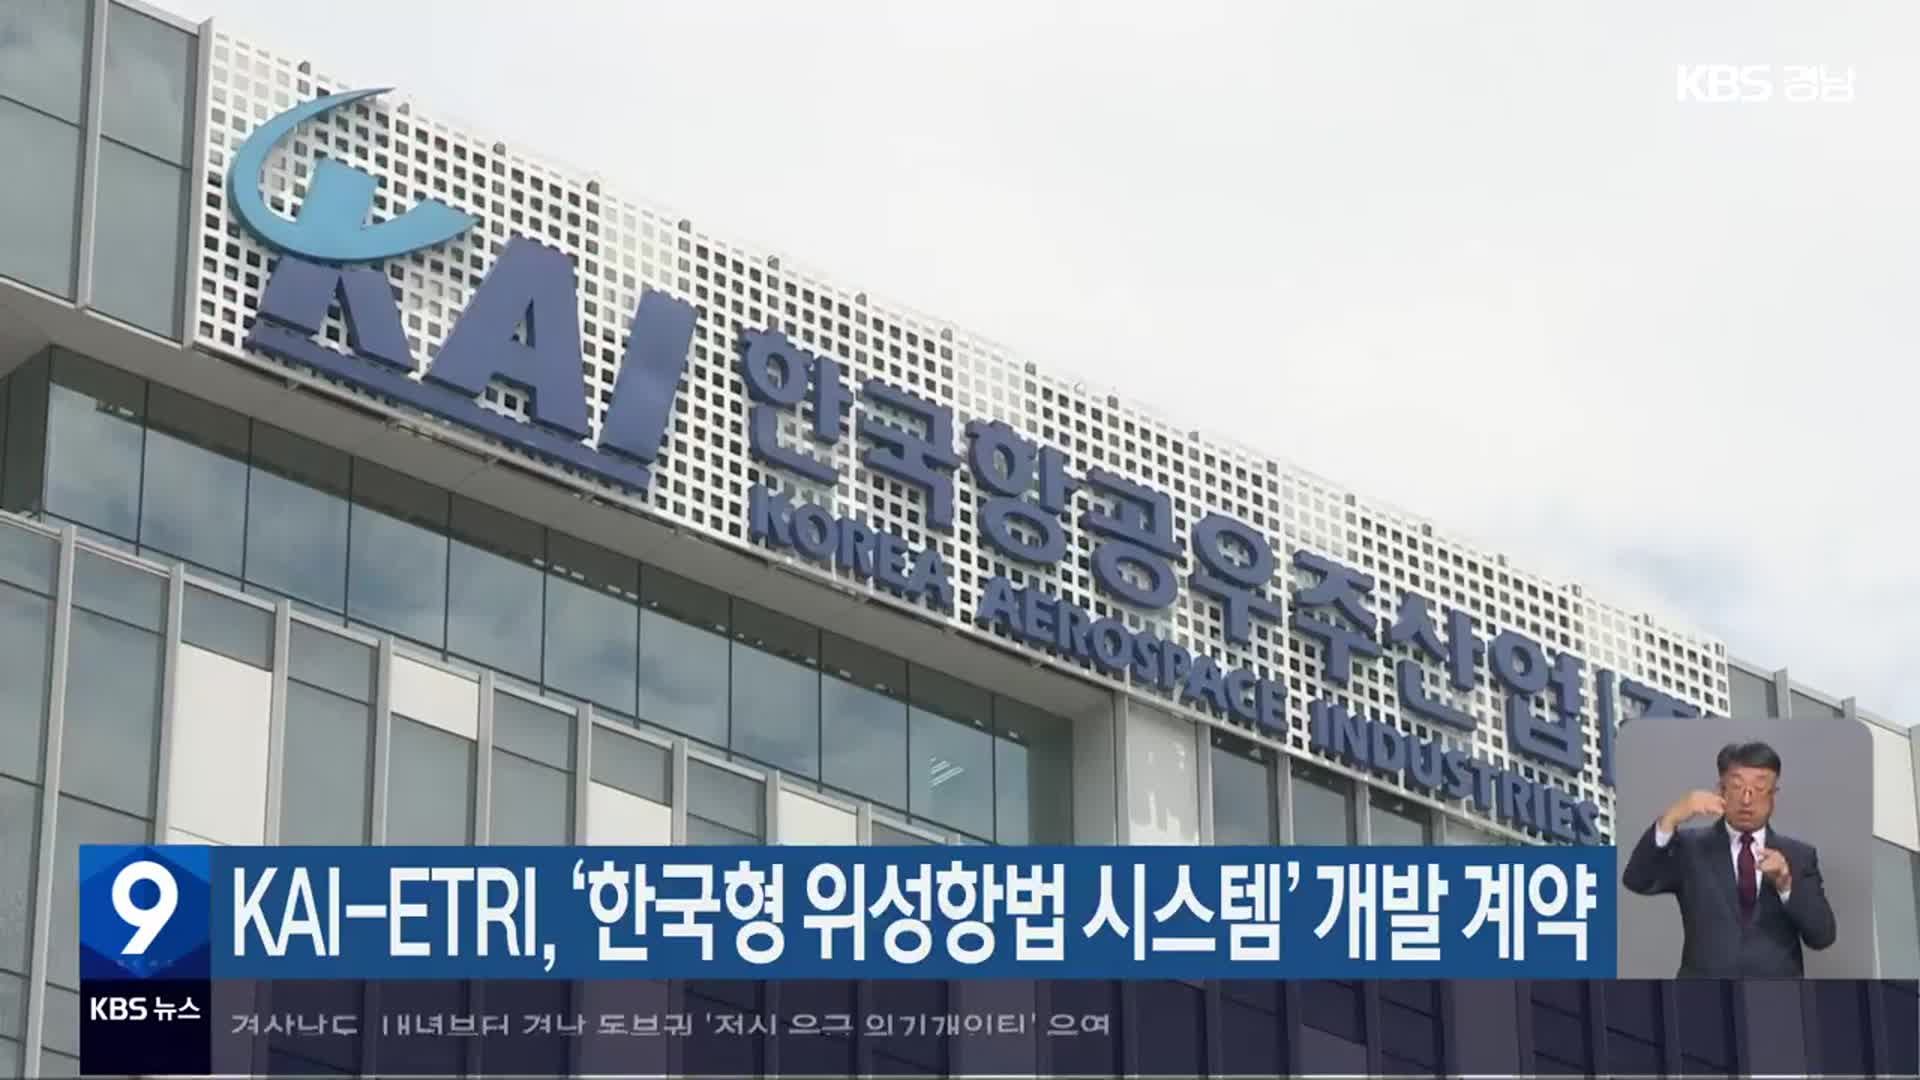 KAI-ETRI, ‘한국형 위성항법 시스템’ 개발 계약